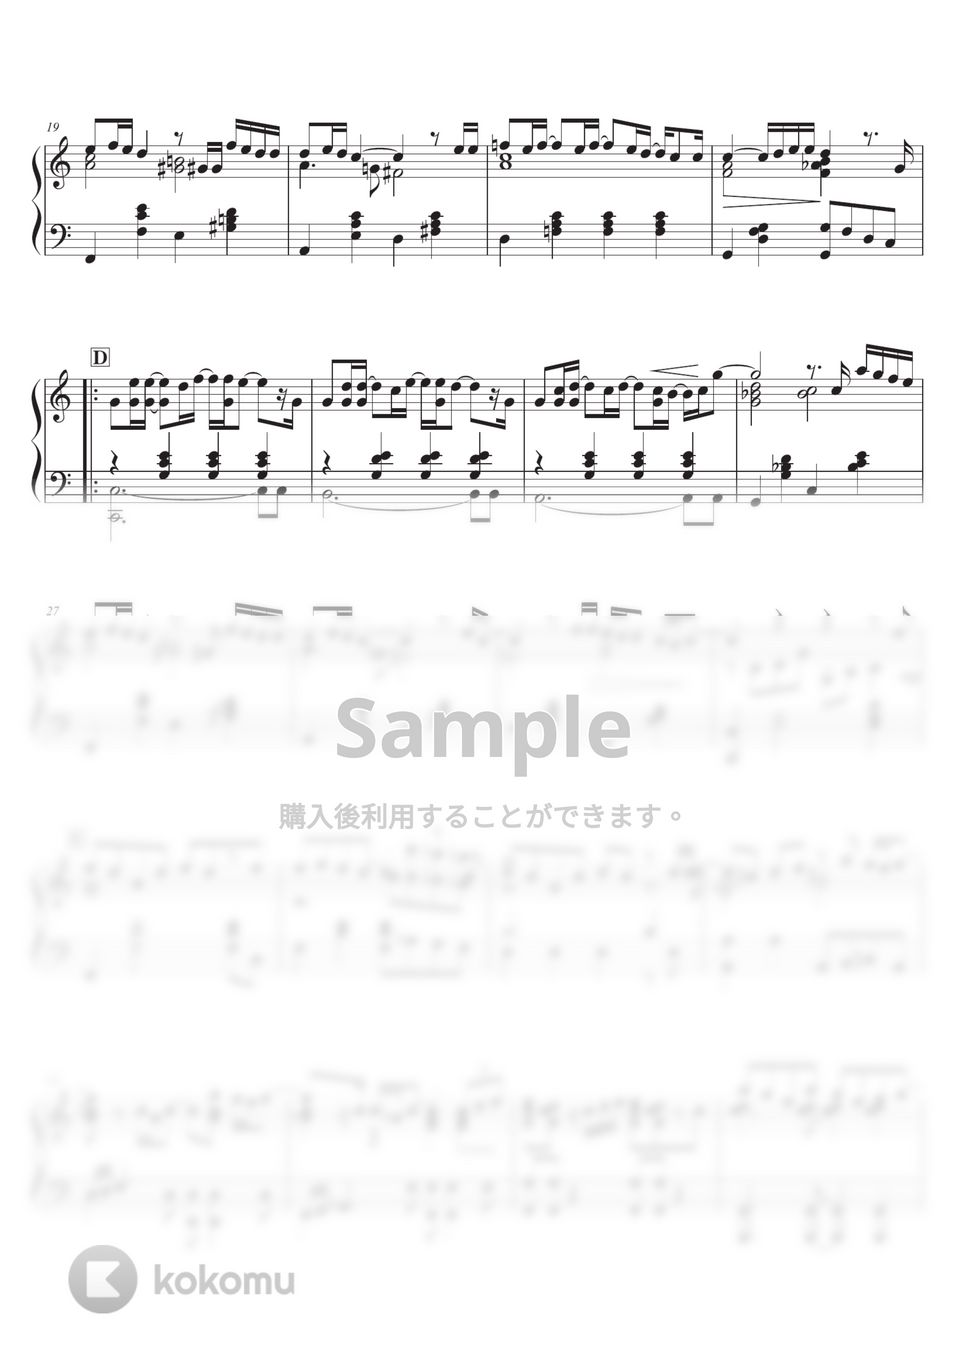 いきものがかり - ありがとう いきものがかり ピアノソロ中級から by SugarPM